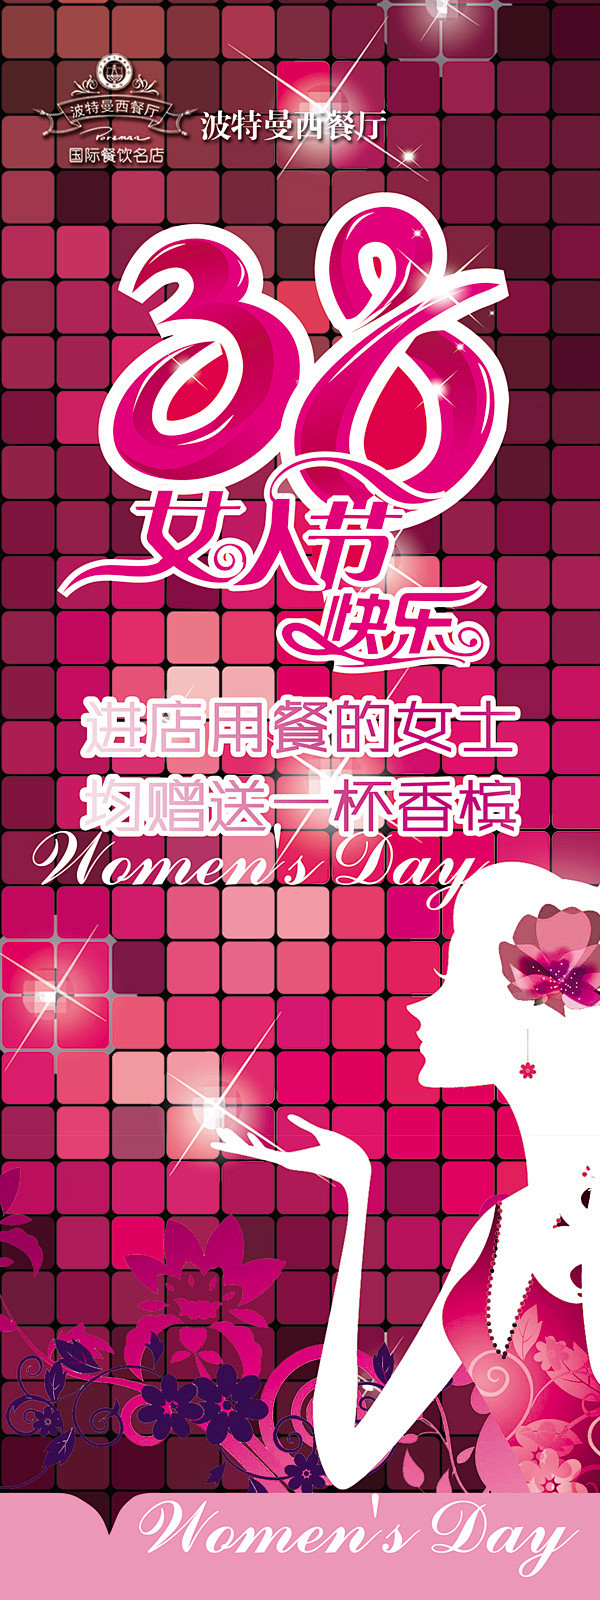 38妇女节快乐_妇女节 - 素材中国_素...